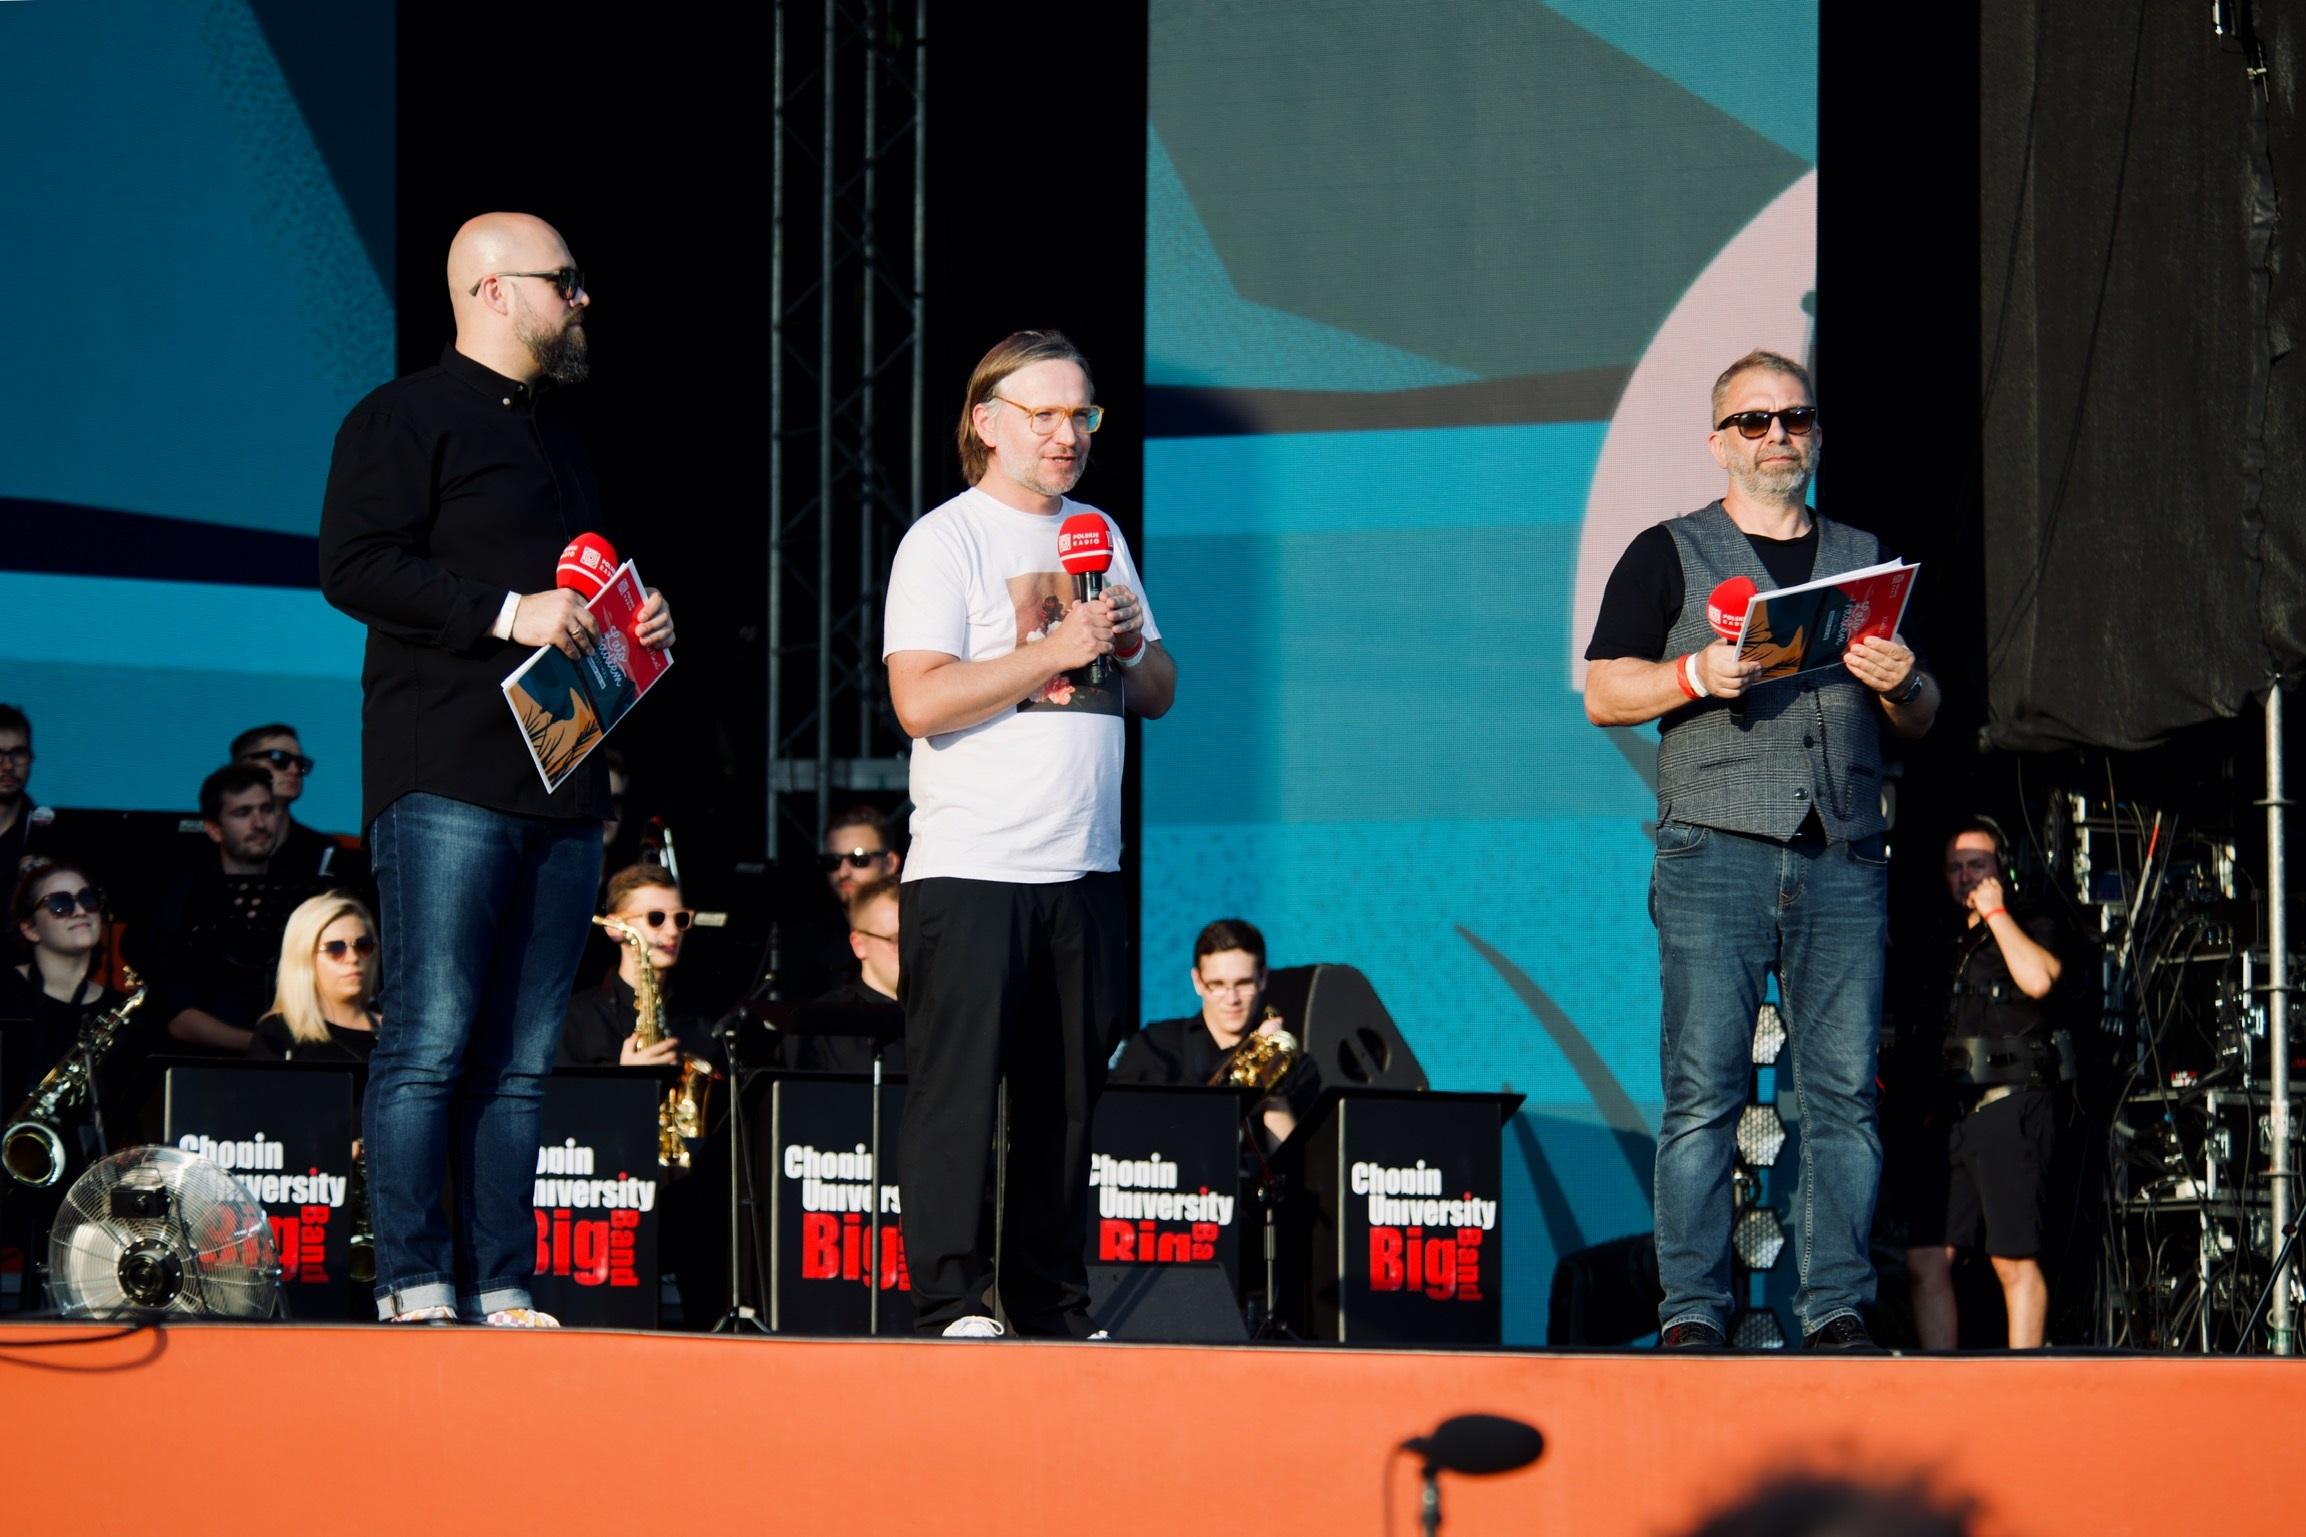 Od lewej: Marcin Kusy, Jacek Hawryluk, Piotr Metz